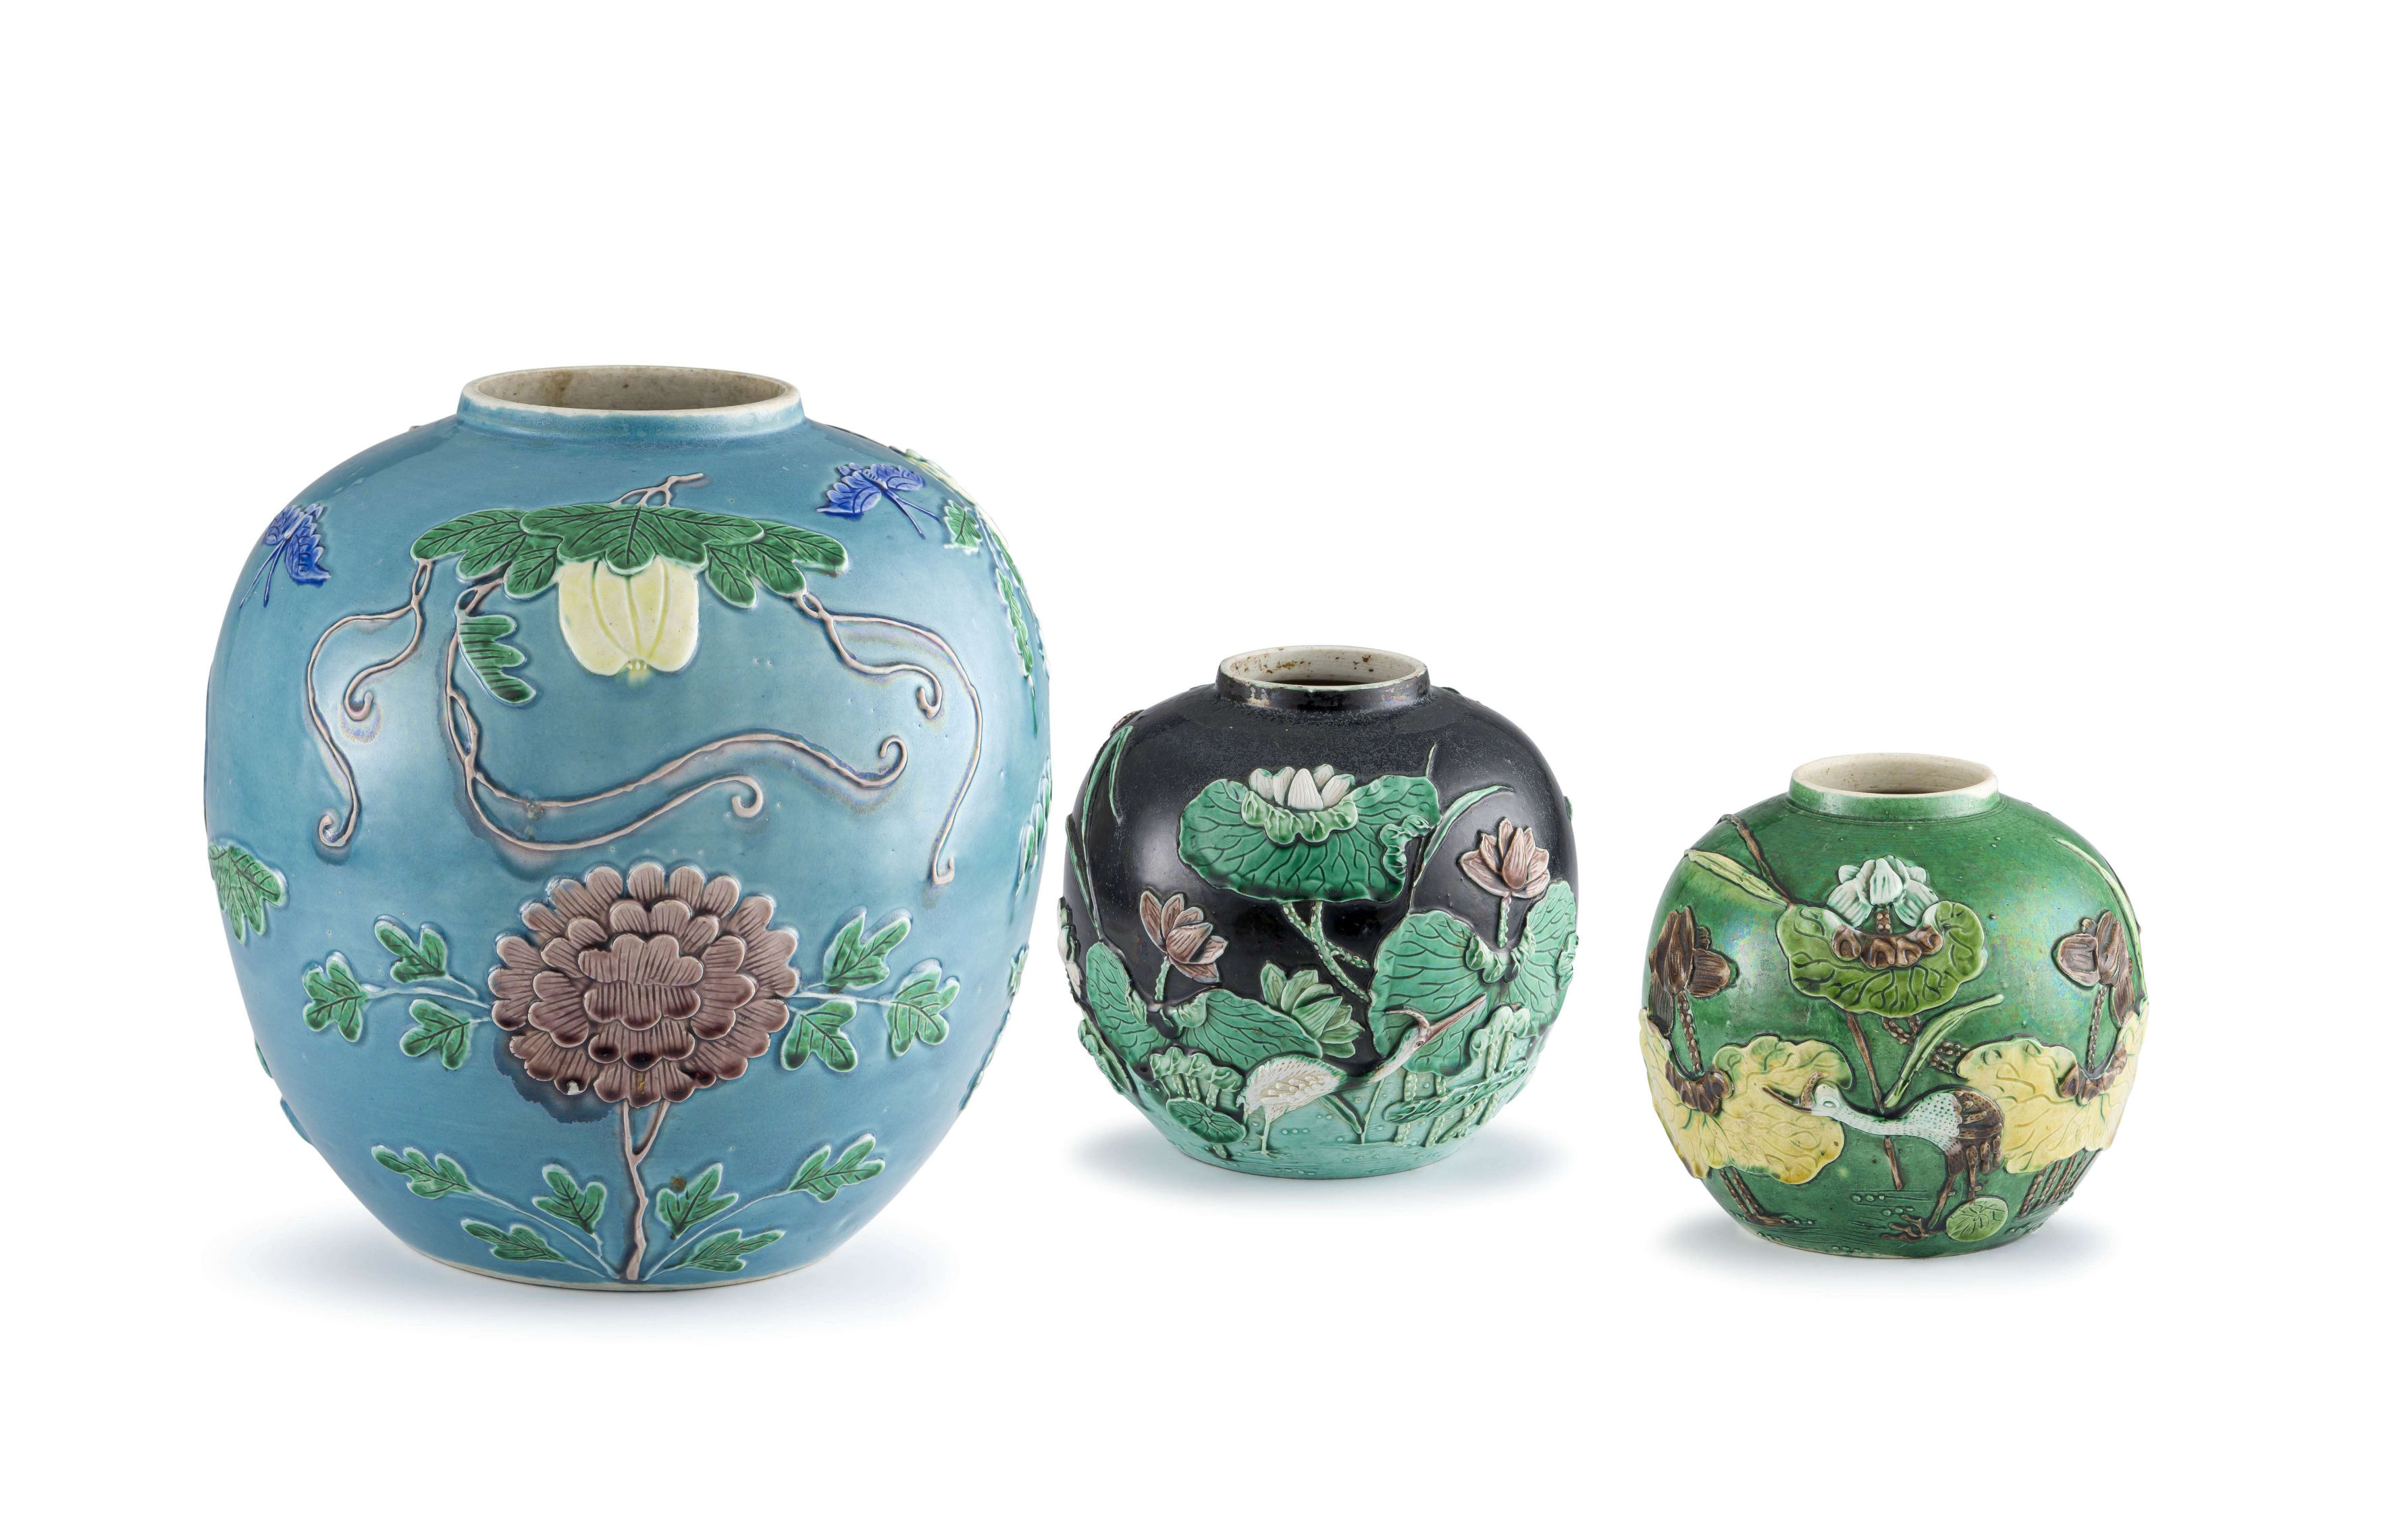 Impressive Chinese White Porcelain Vase. Late XIX Century. Wang